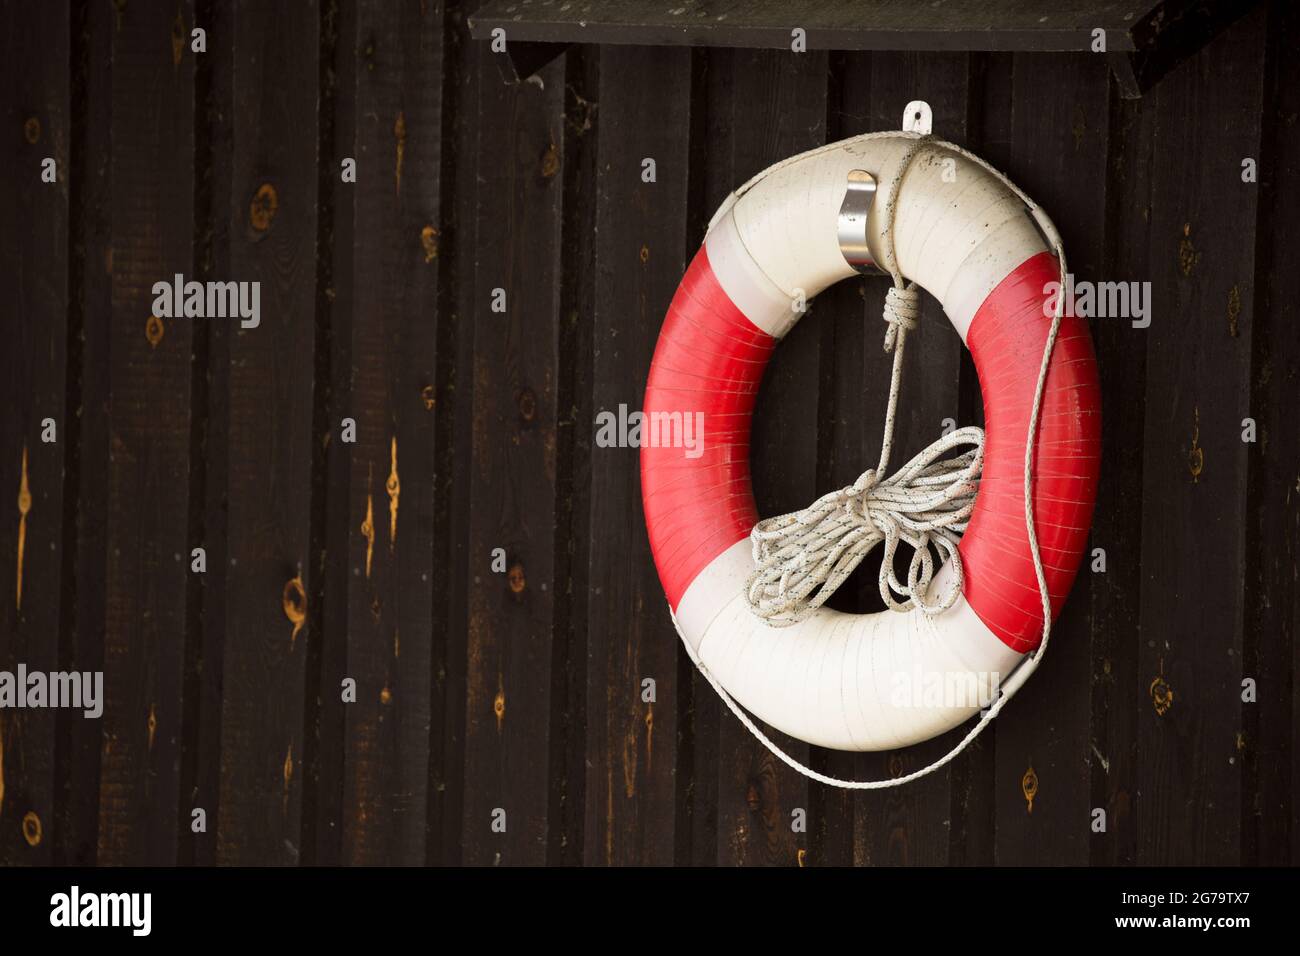 Bouée de sauvetage avec corde flottante accrochée sur un mur en bois sombre  Photo Stock - Alamy